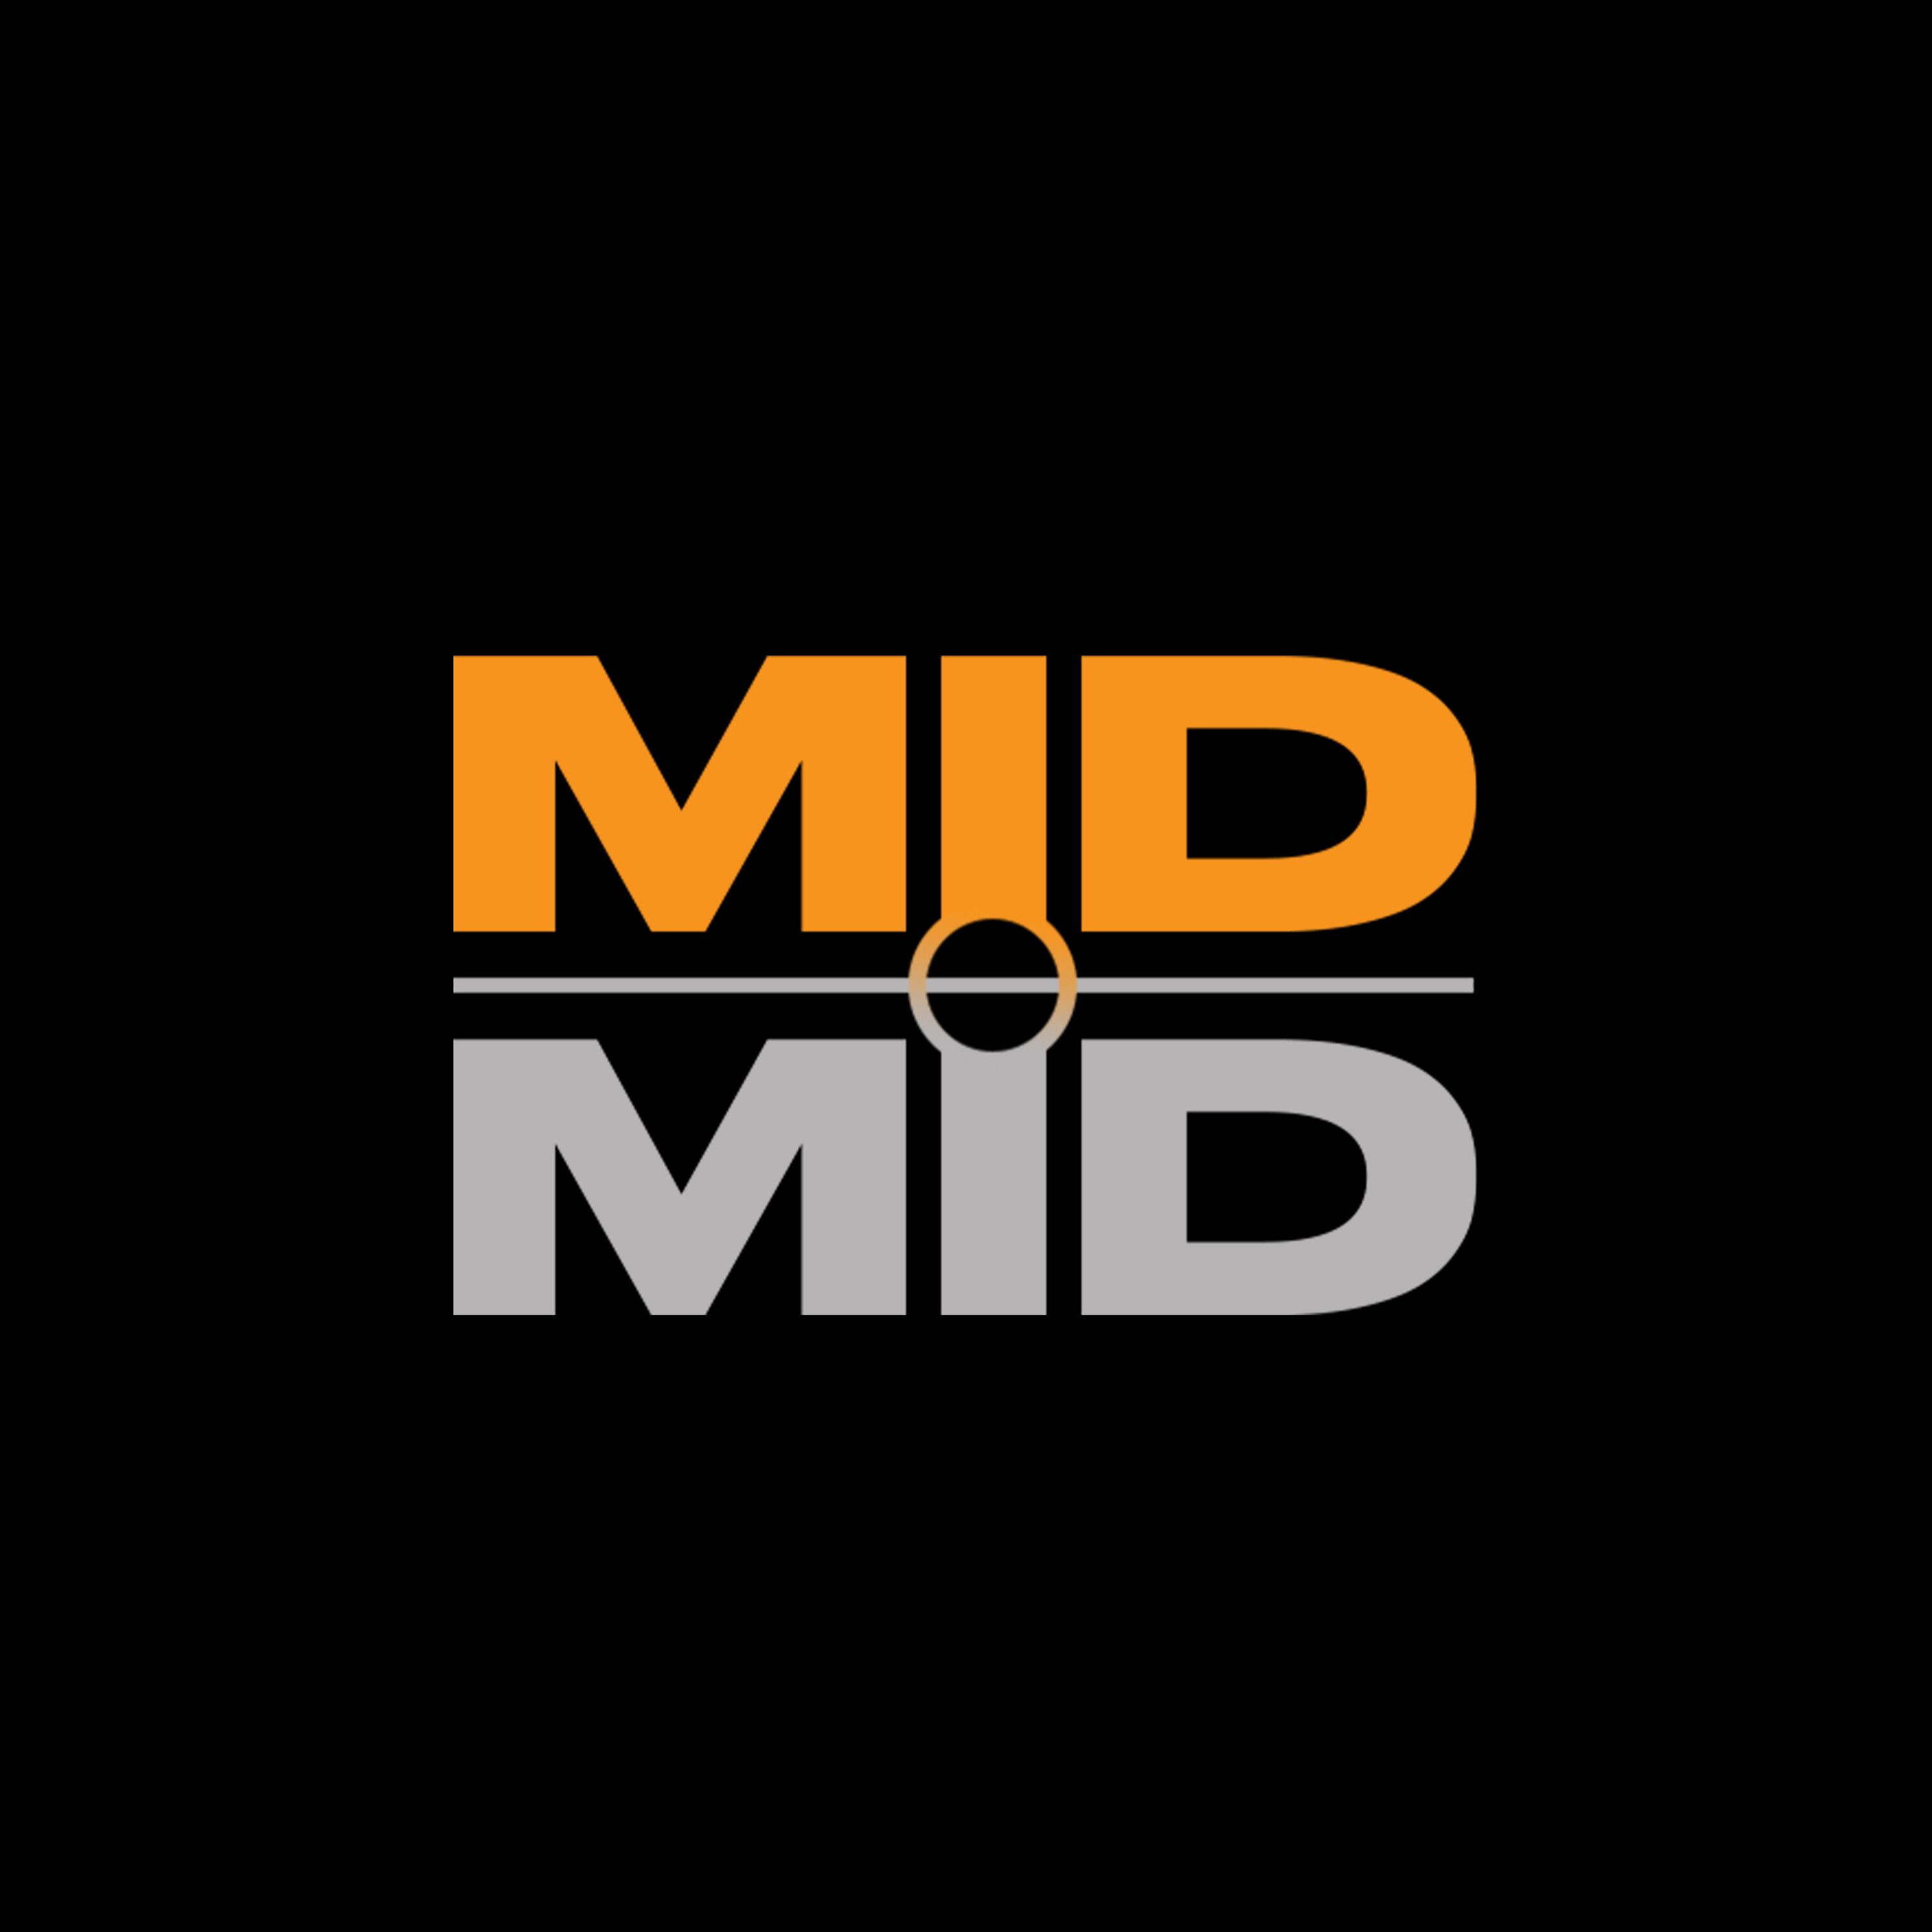 MIDMID - De Premier League uitgespeeld met Filip Joos, Leroy Deltour en Tim Wielandt